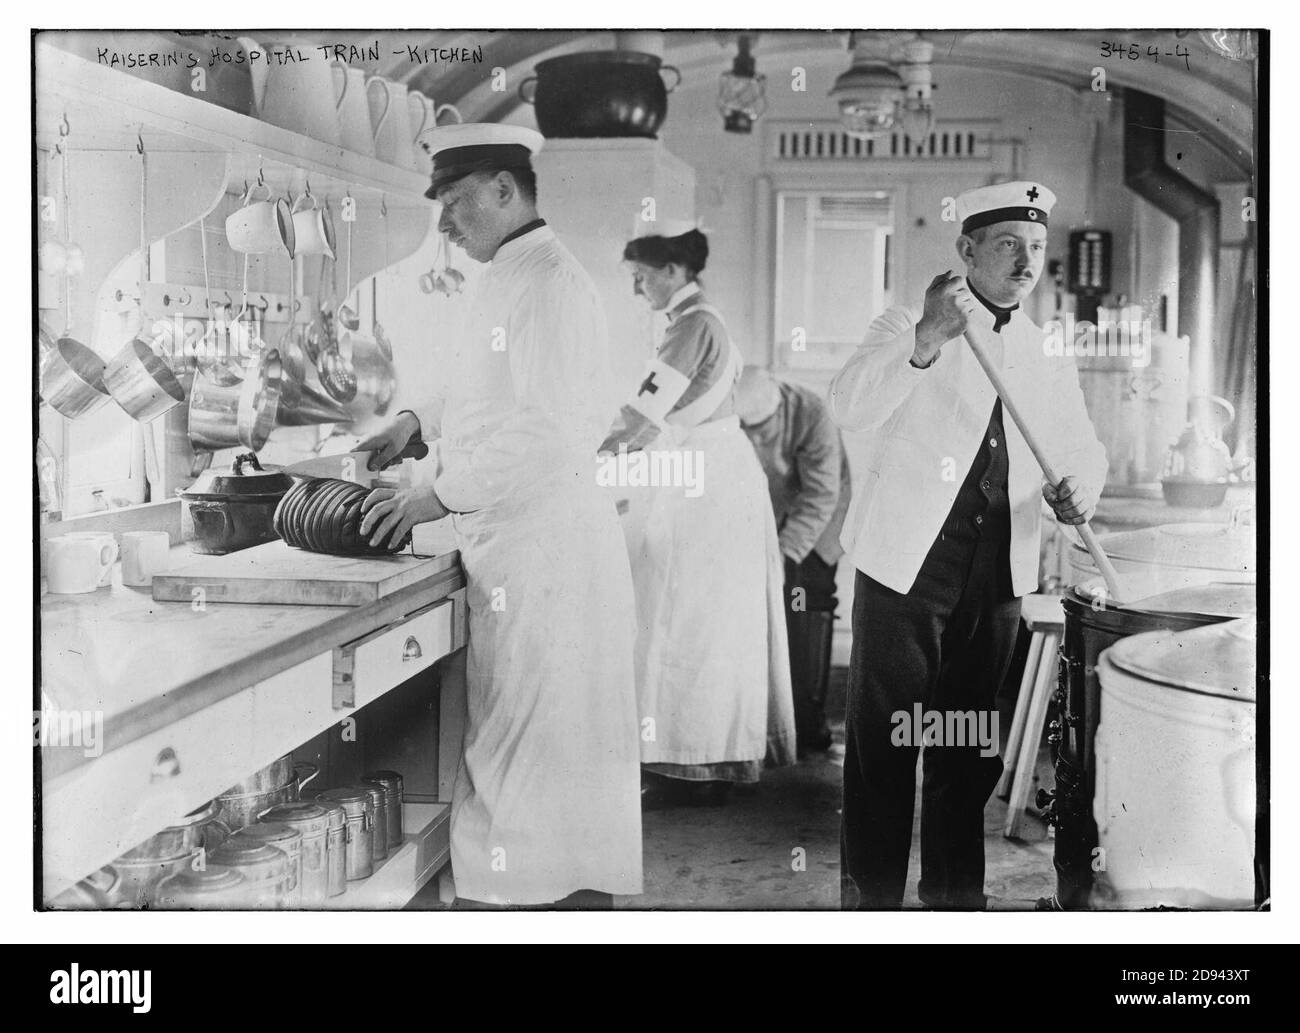 Kaiserin's Hospital Train - kitchen Stock Photo